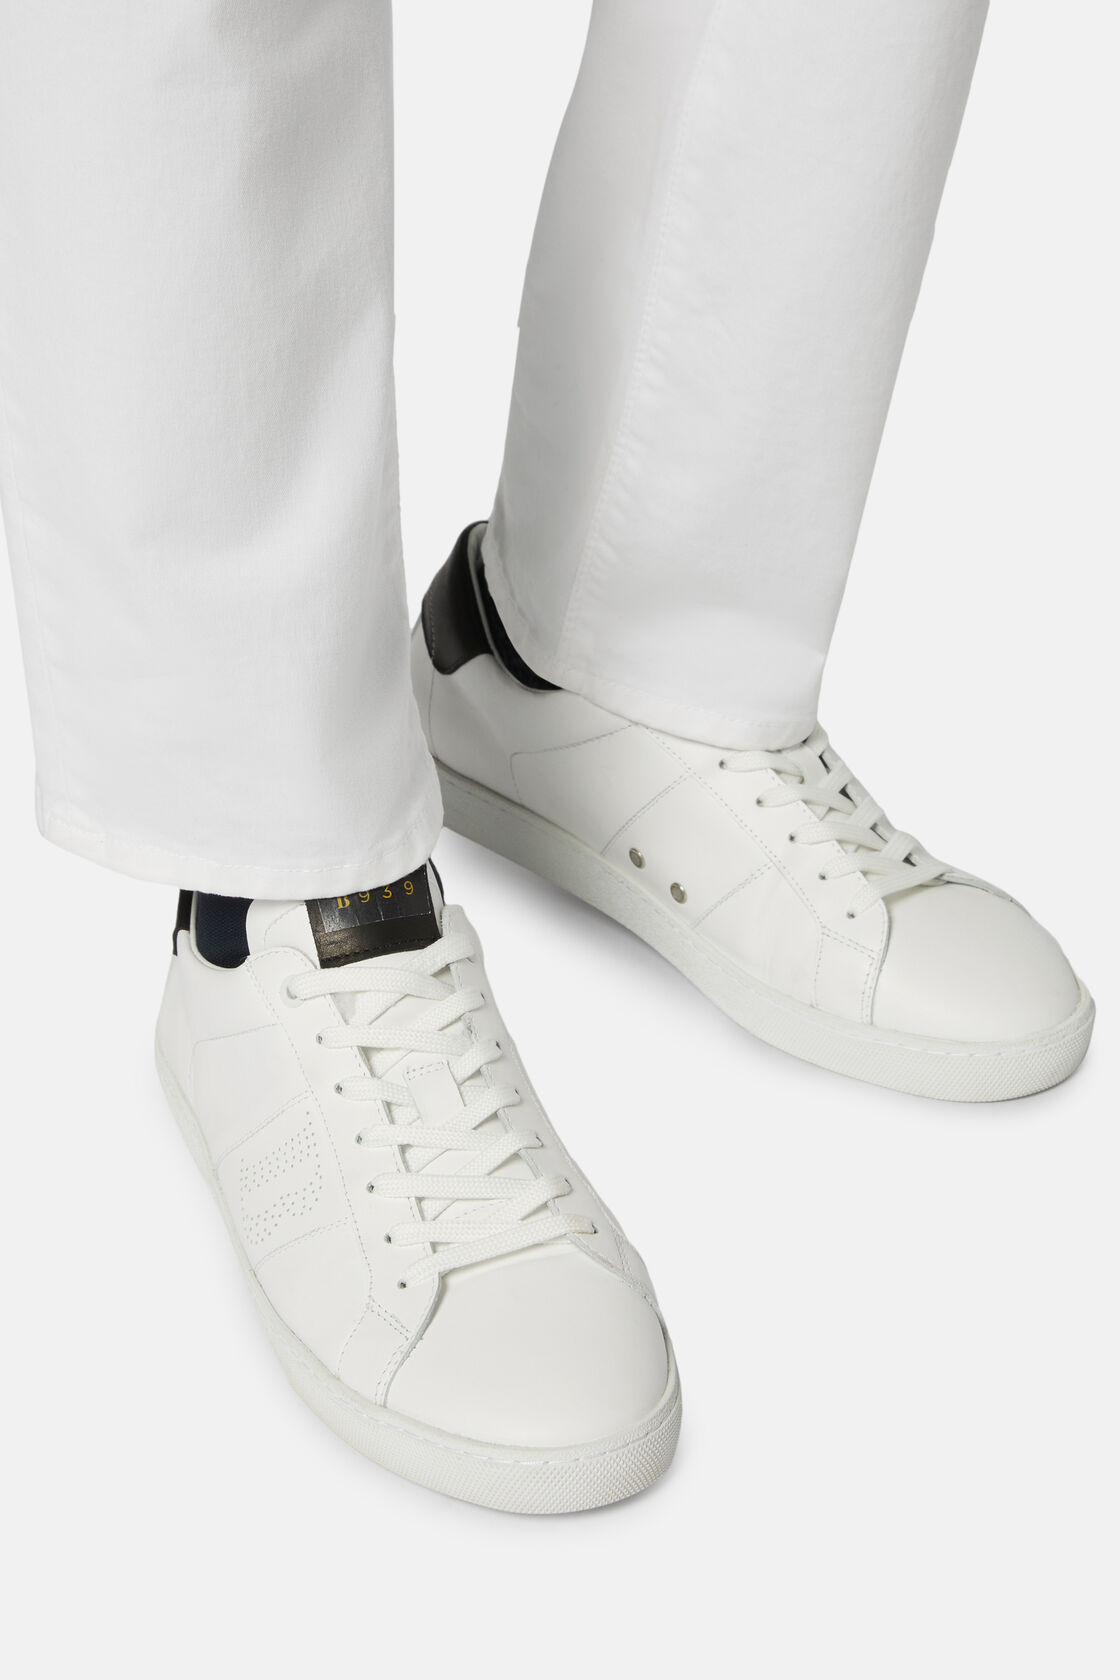 Sneakers En Cuir Blanc Et Noir, Noir - Blanc, hi-res